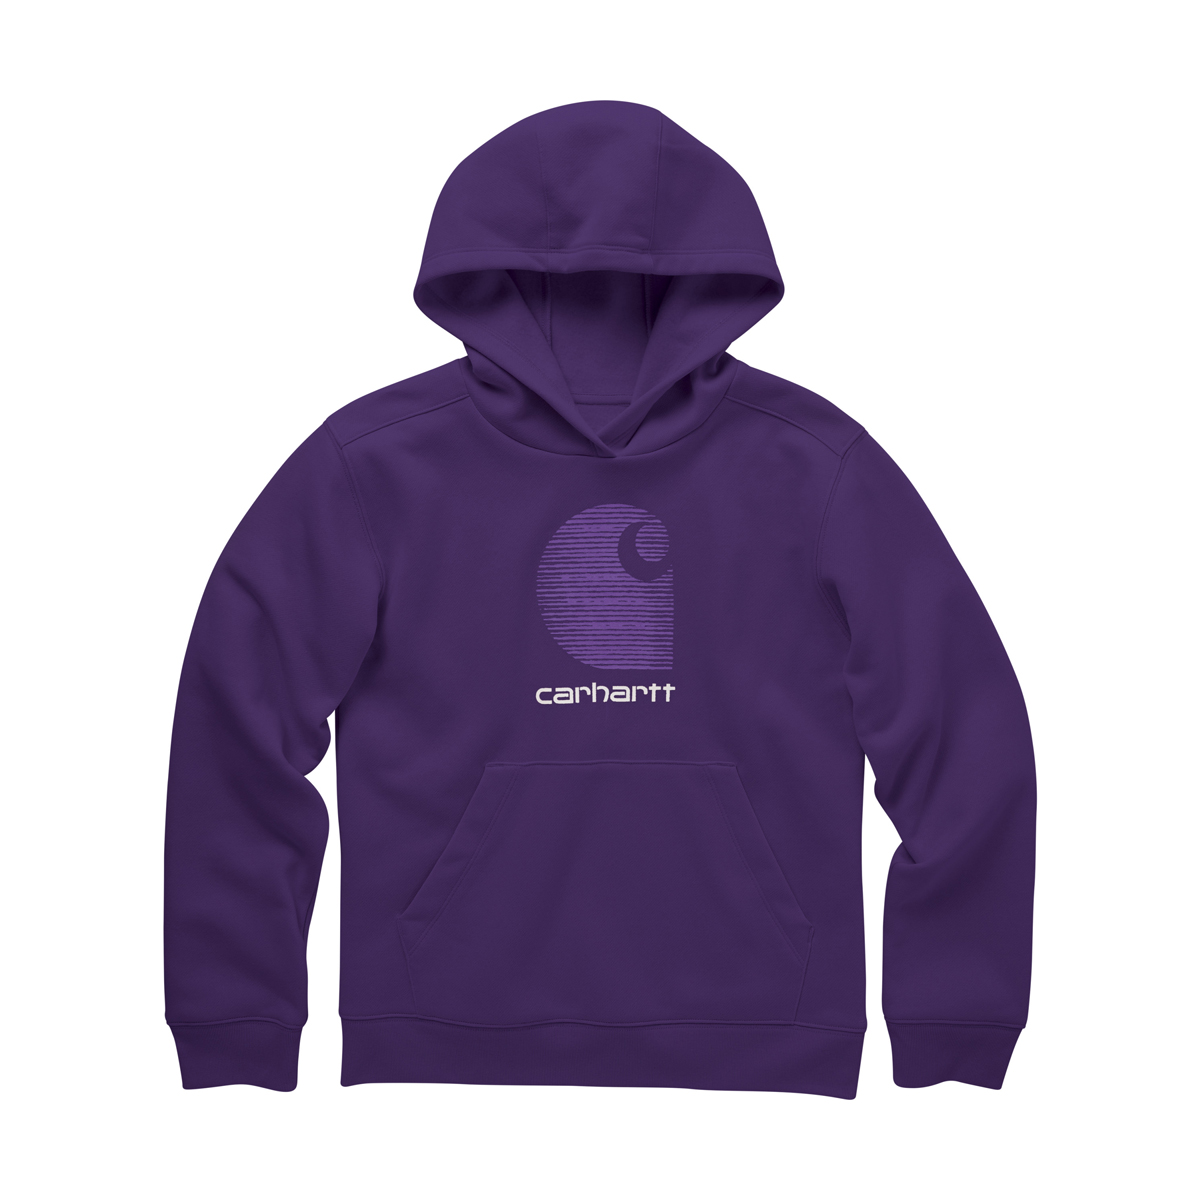 Carhartt Kid's Long Sleeve Girl's Pullover Hoodie - Purple